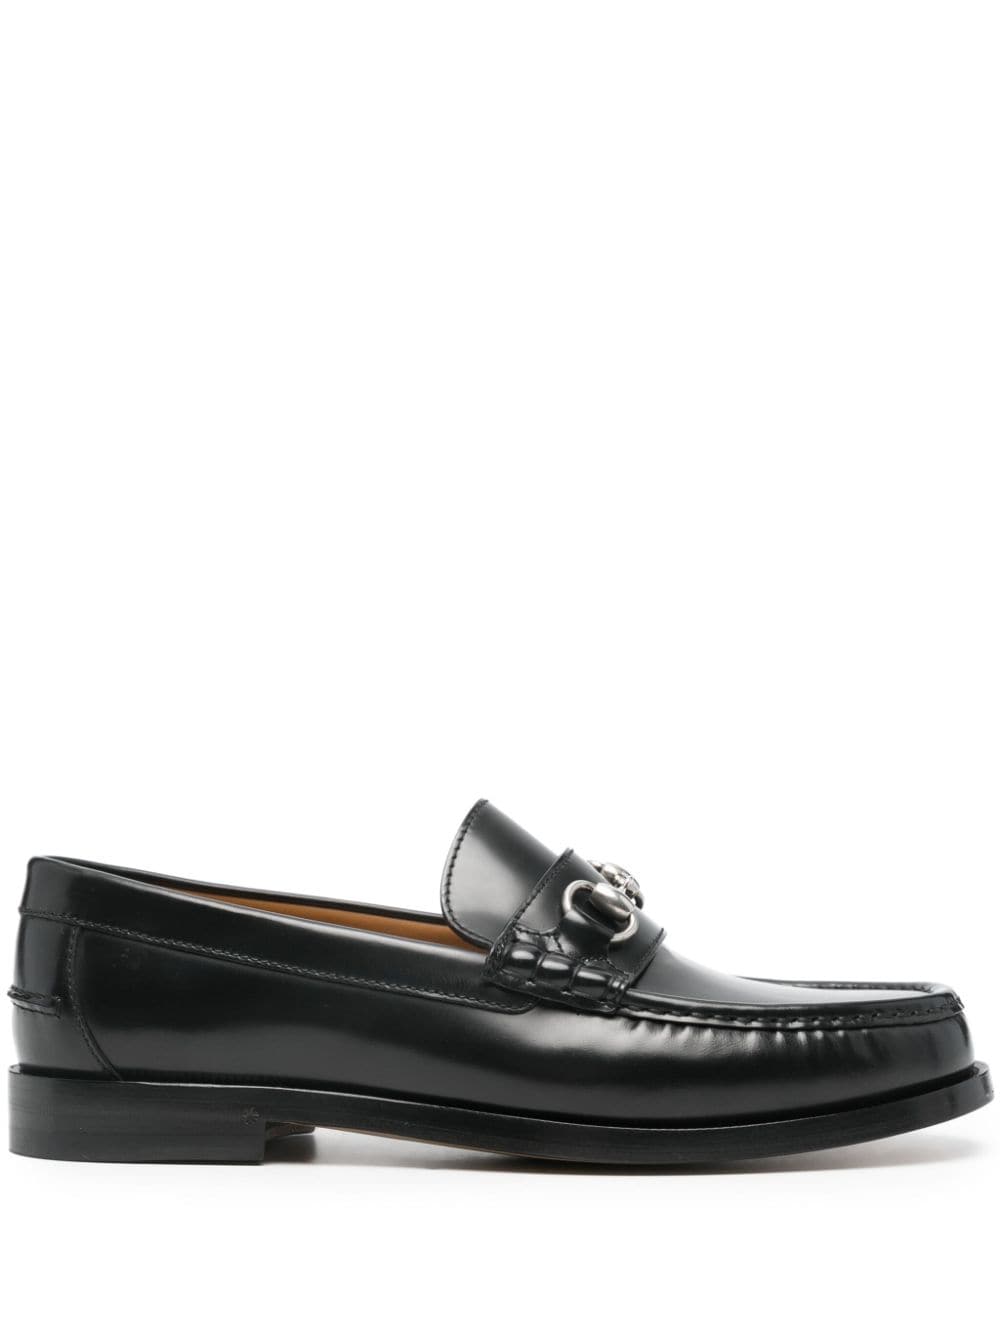 Gucci Horsebit leather loafers - Black von Gucci